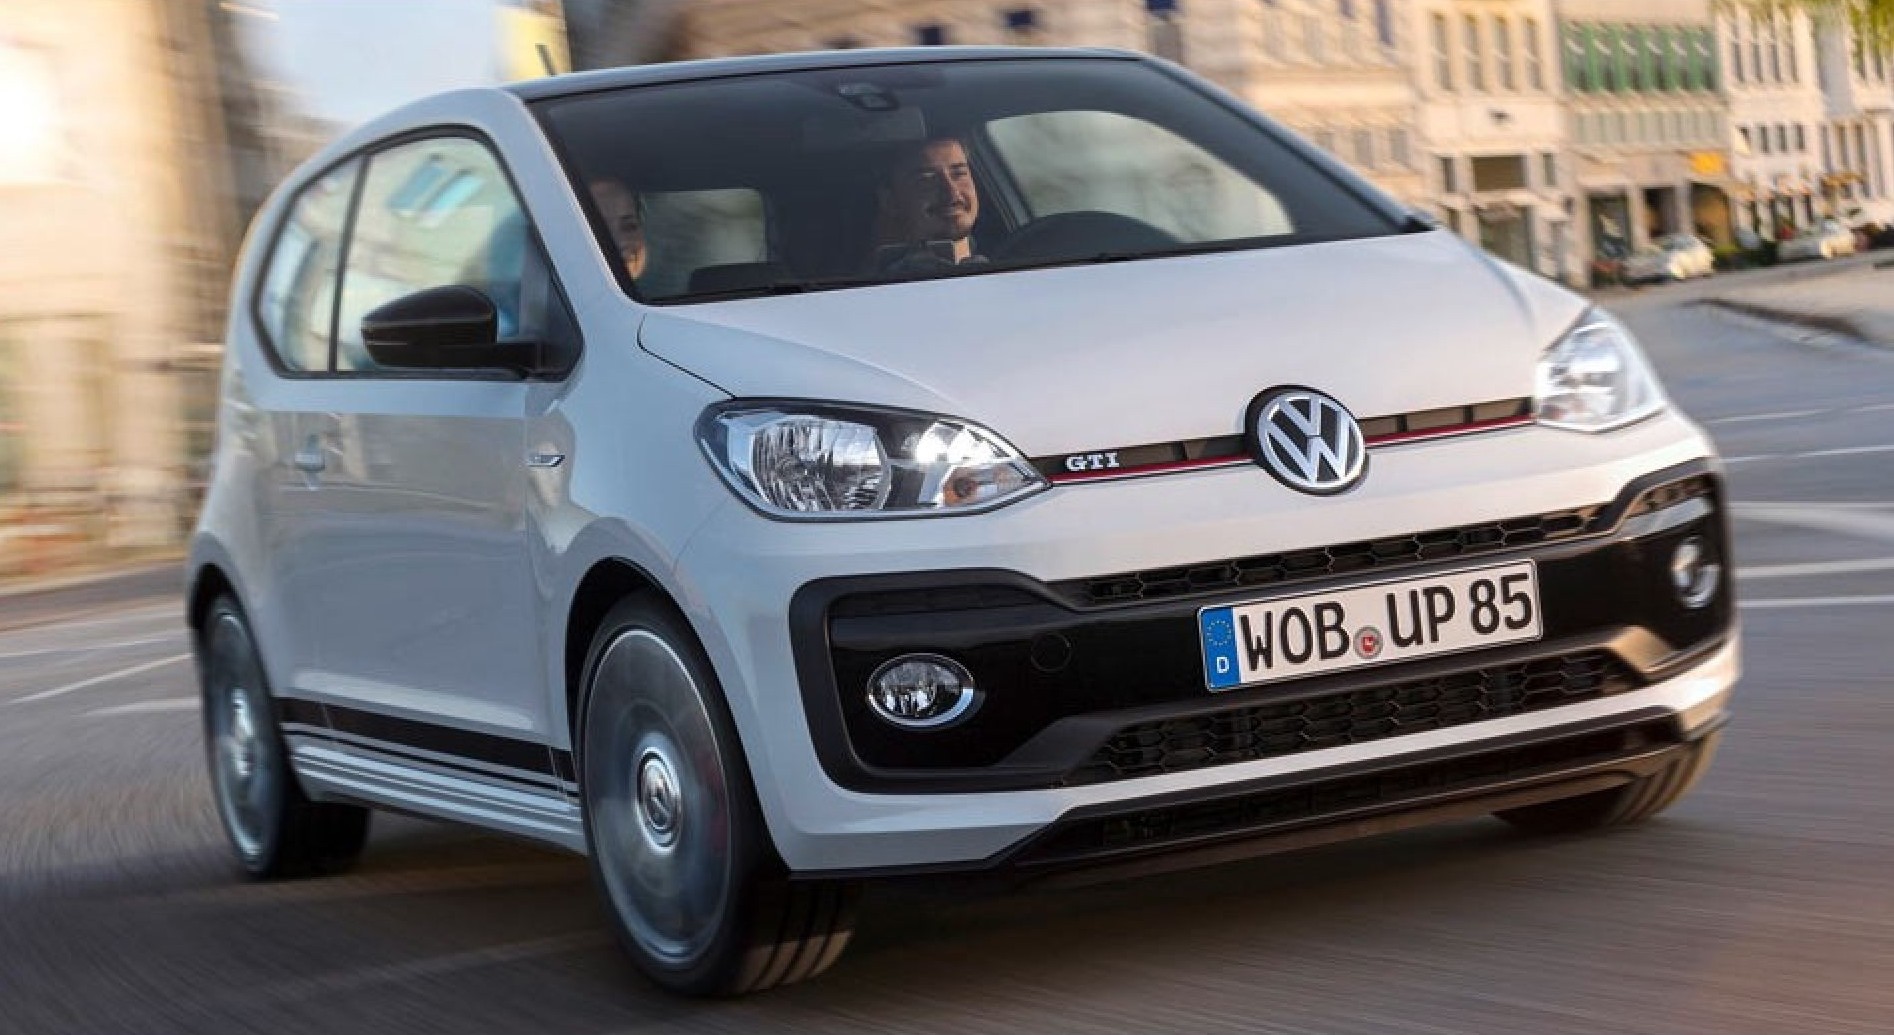 Nuevo Volkswagen Up Cómo comprarlo ahora por sólo 3.500 euros (sin usar)